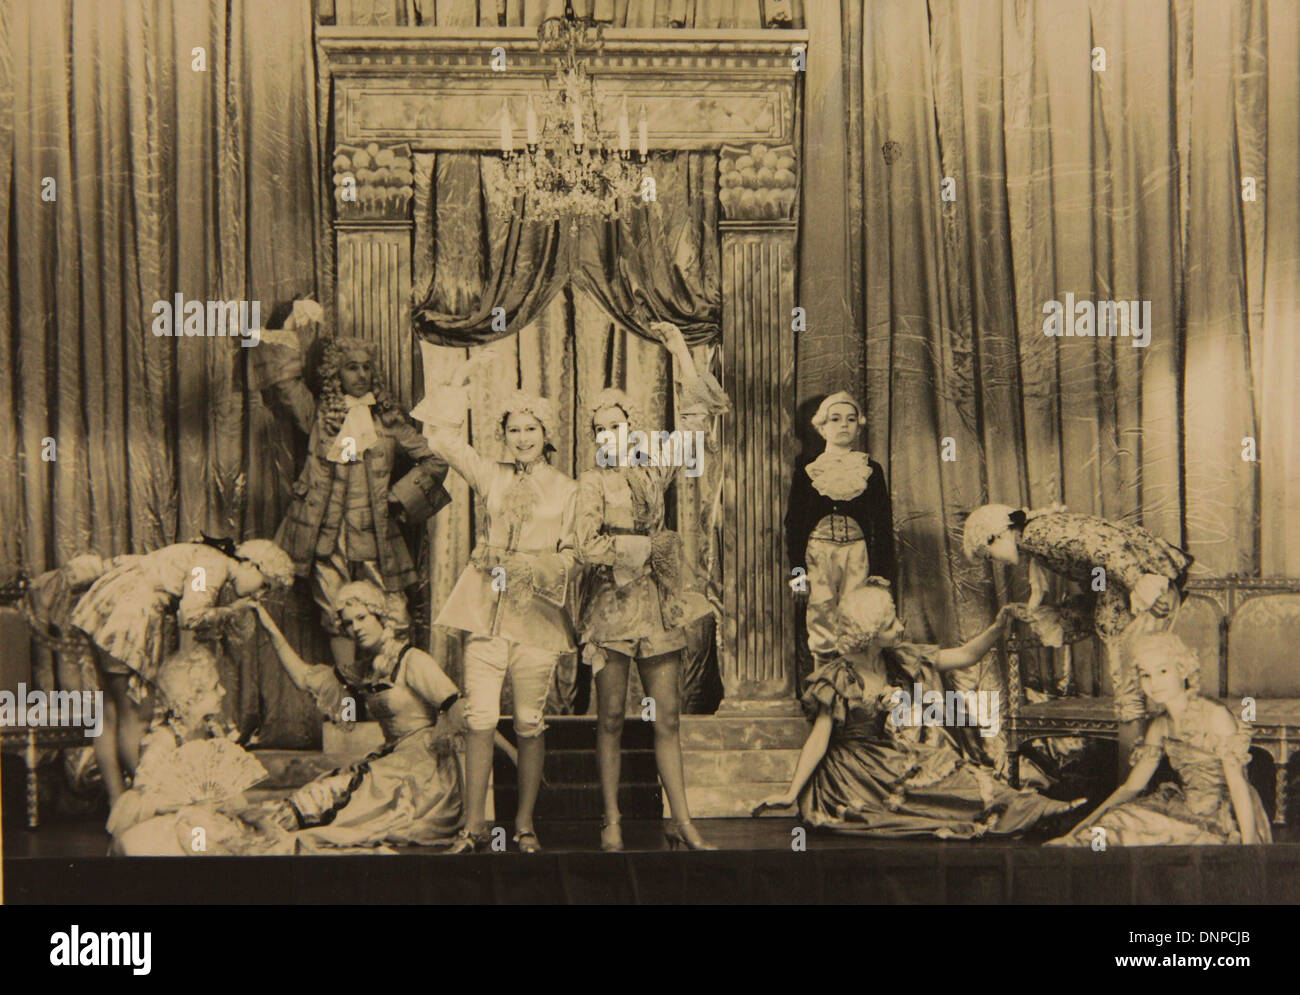 Recueillir des photographie de la princesse Elizabeth (centre gauche) dans la pièce de Cendrillon, 1941 Banque D'Images